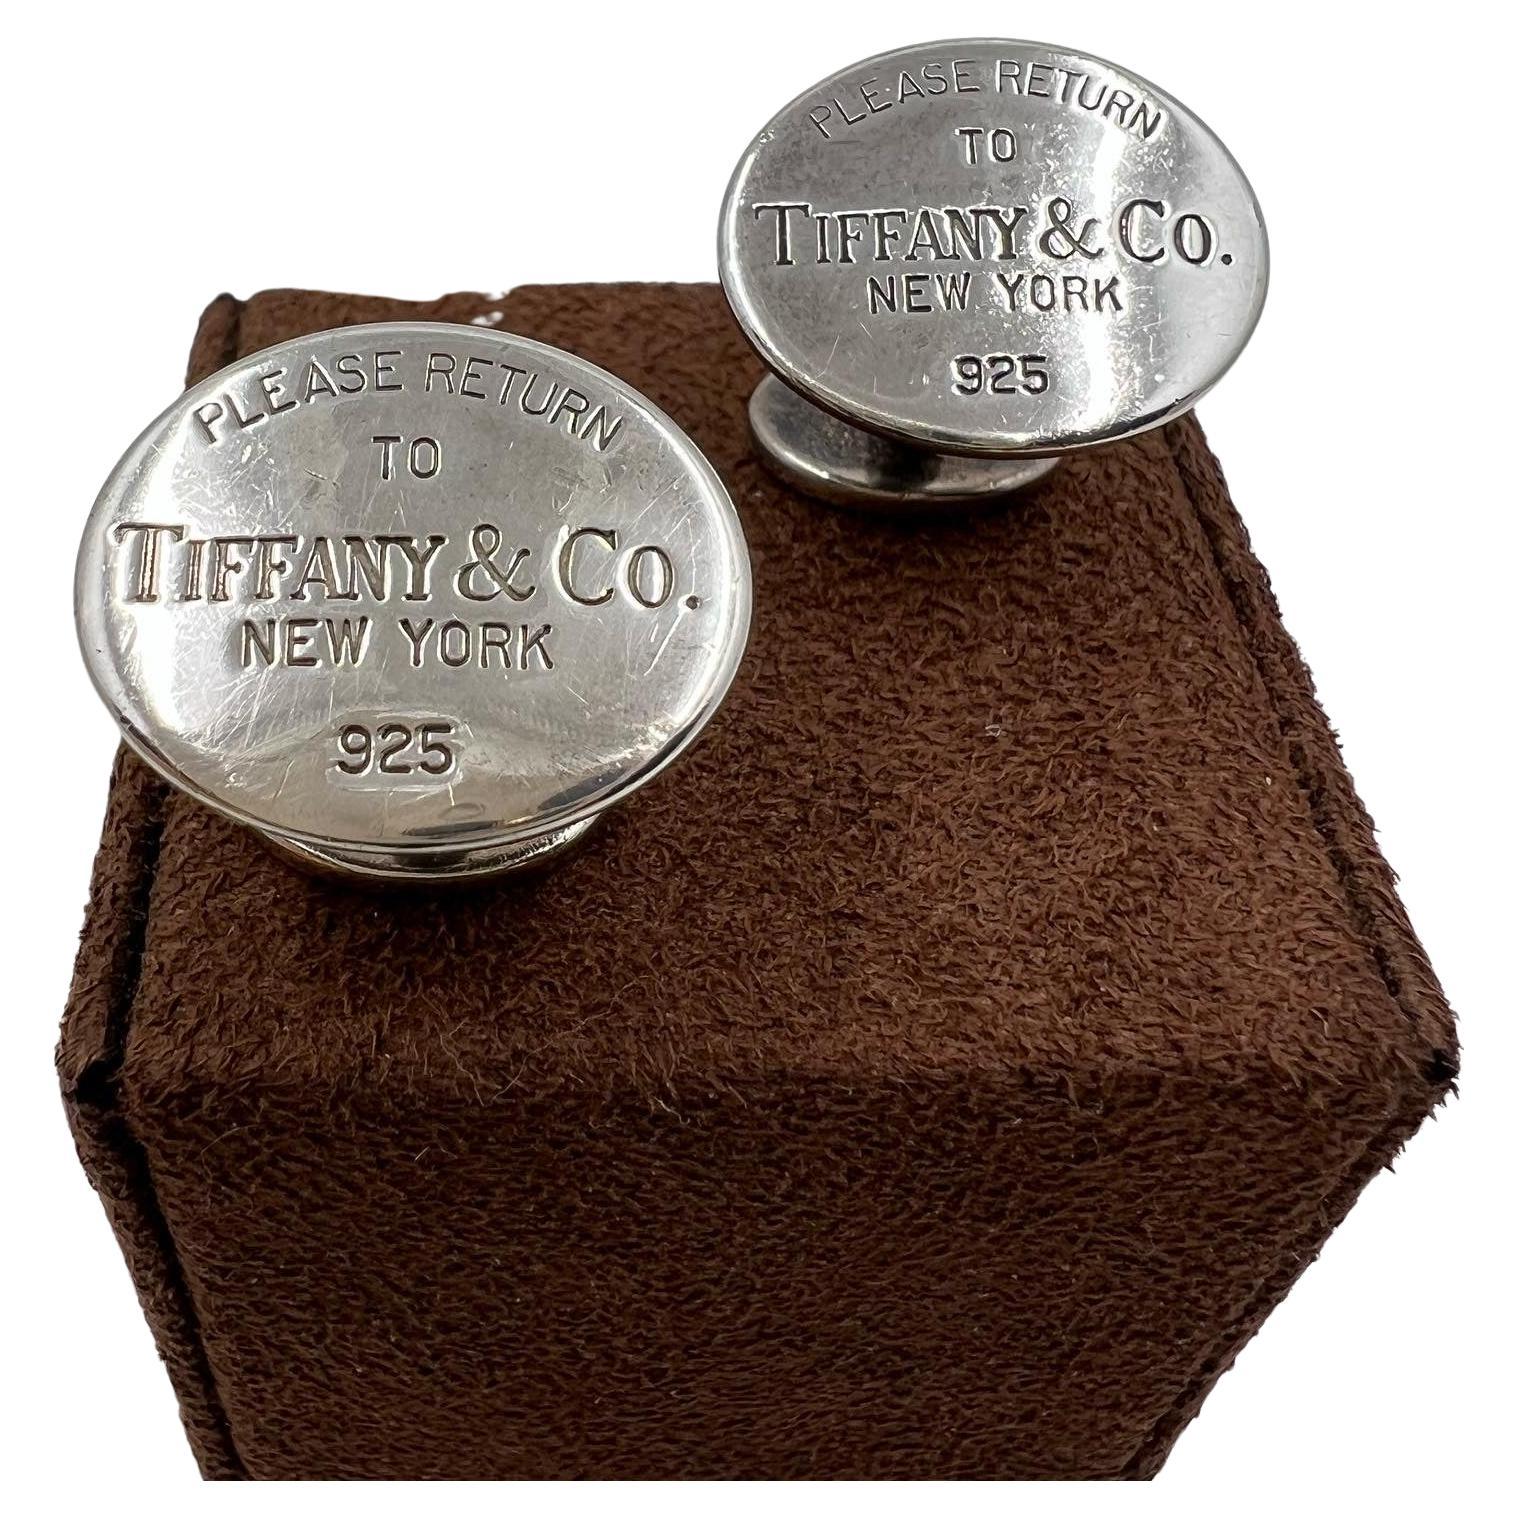 Tiffany & CO.  "Please return to" silver cufflinks